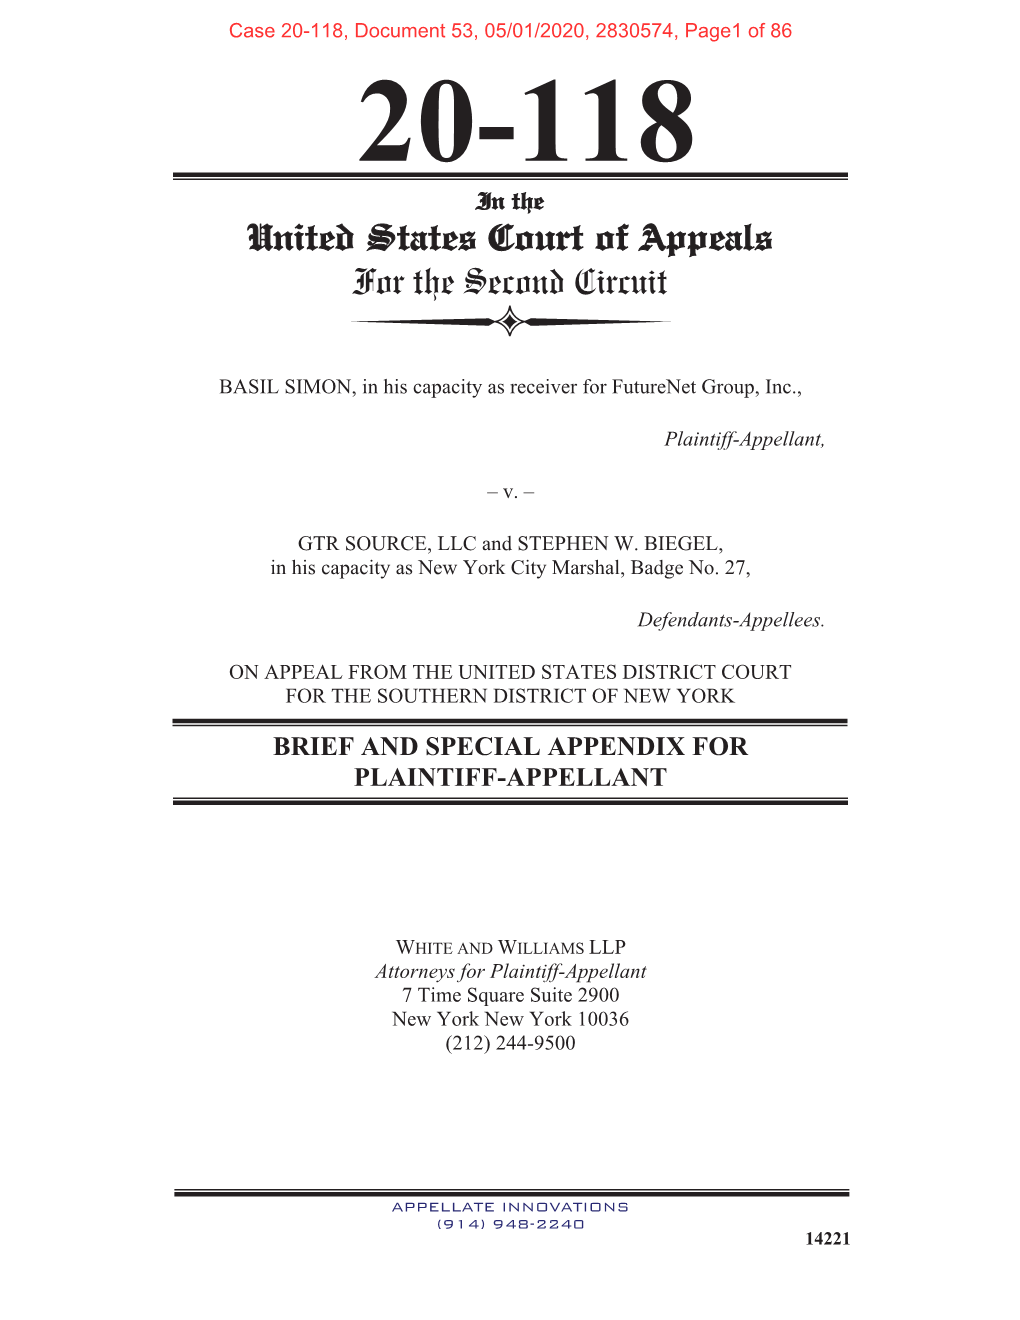 Appellant's Brief